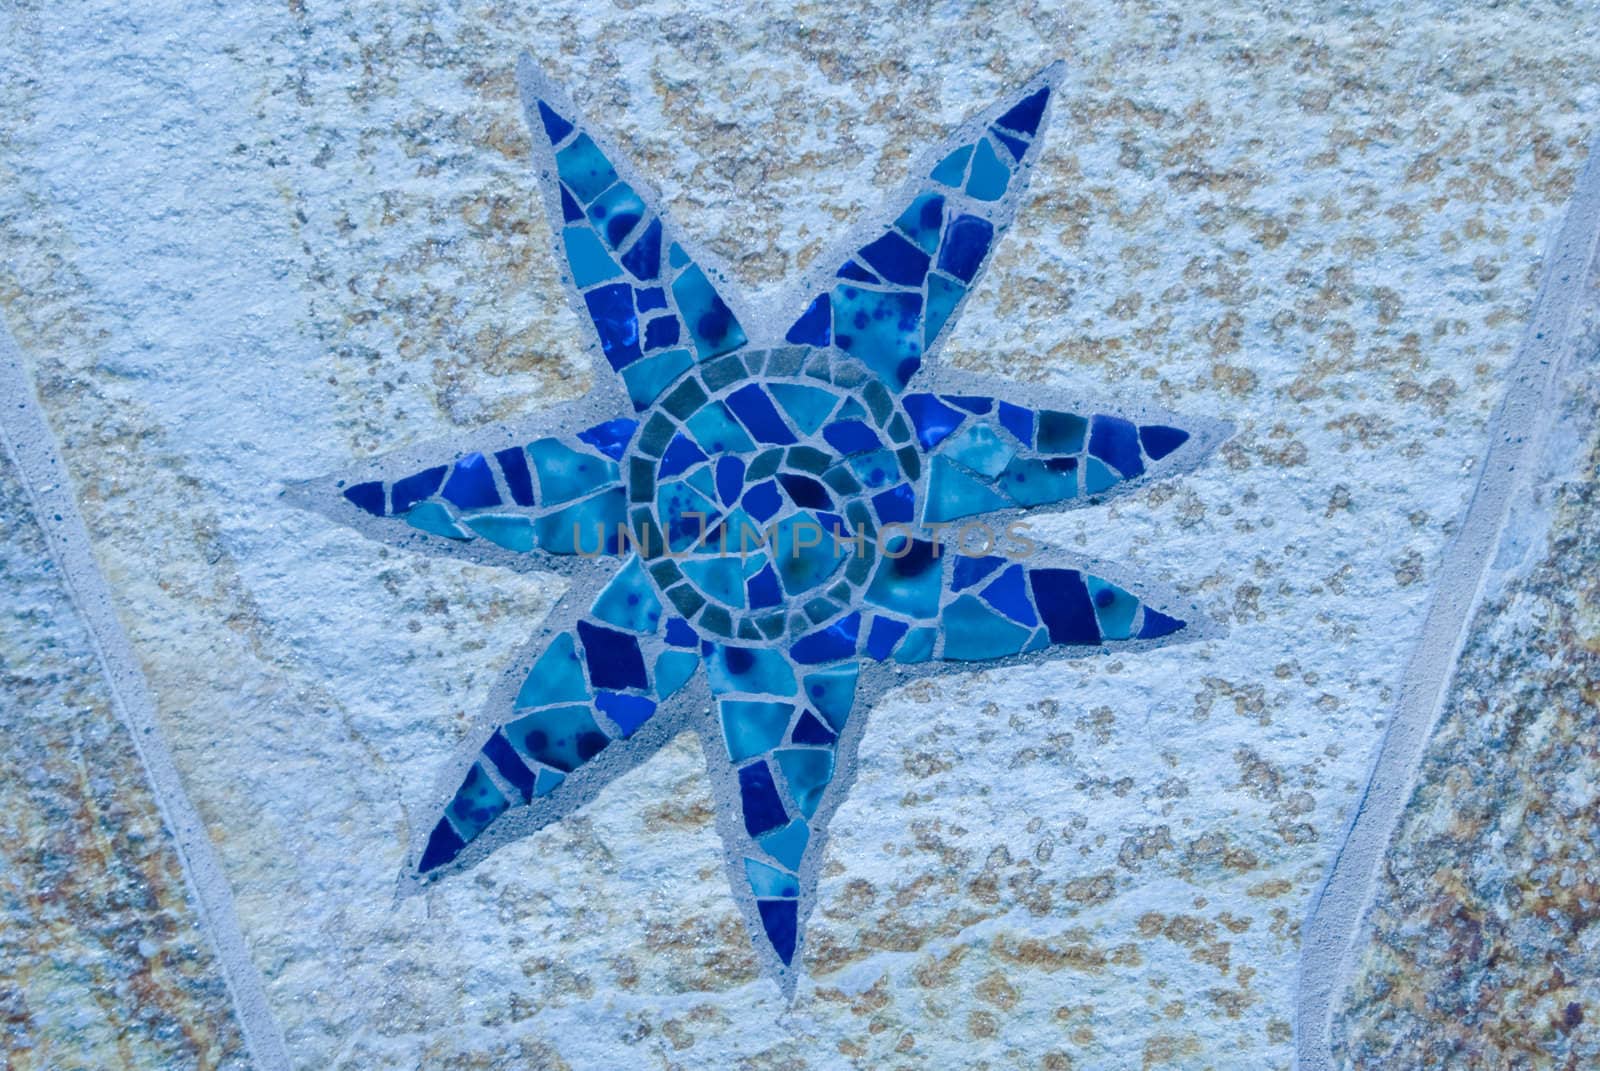 Sea star by emattil